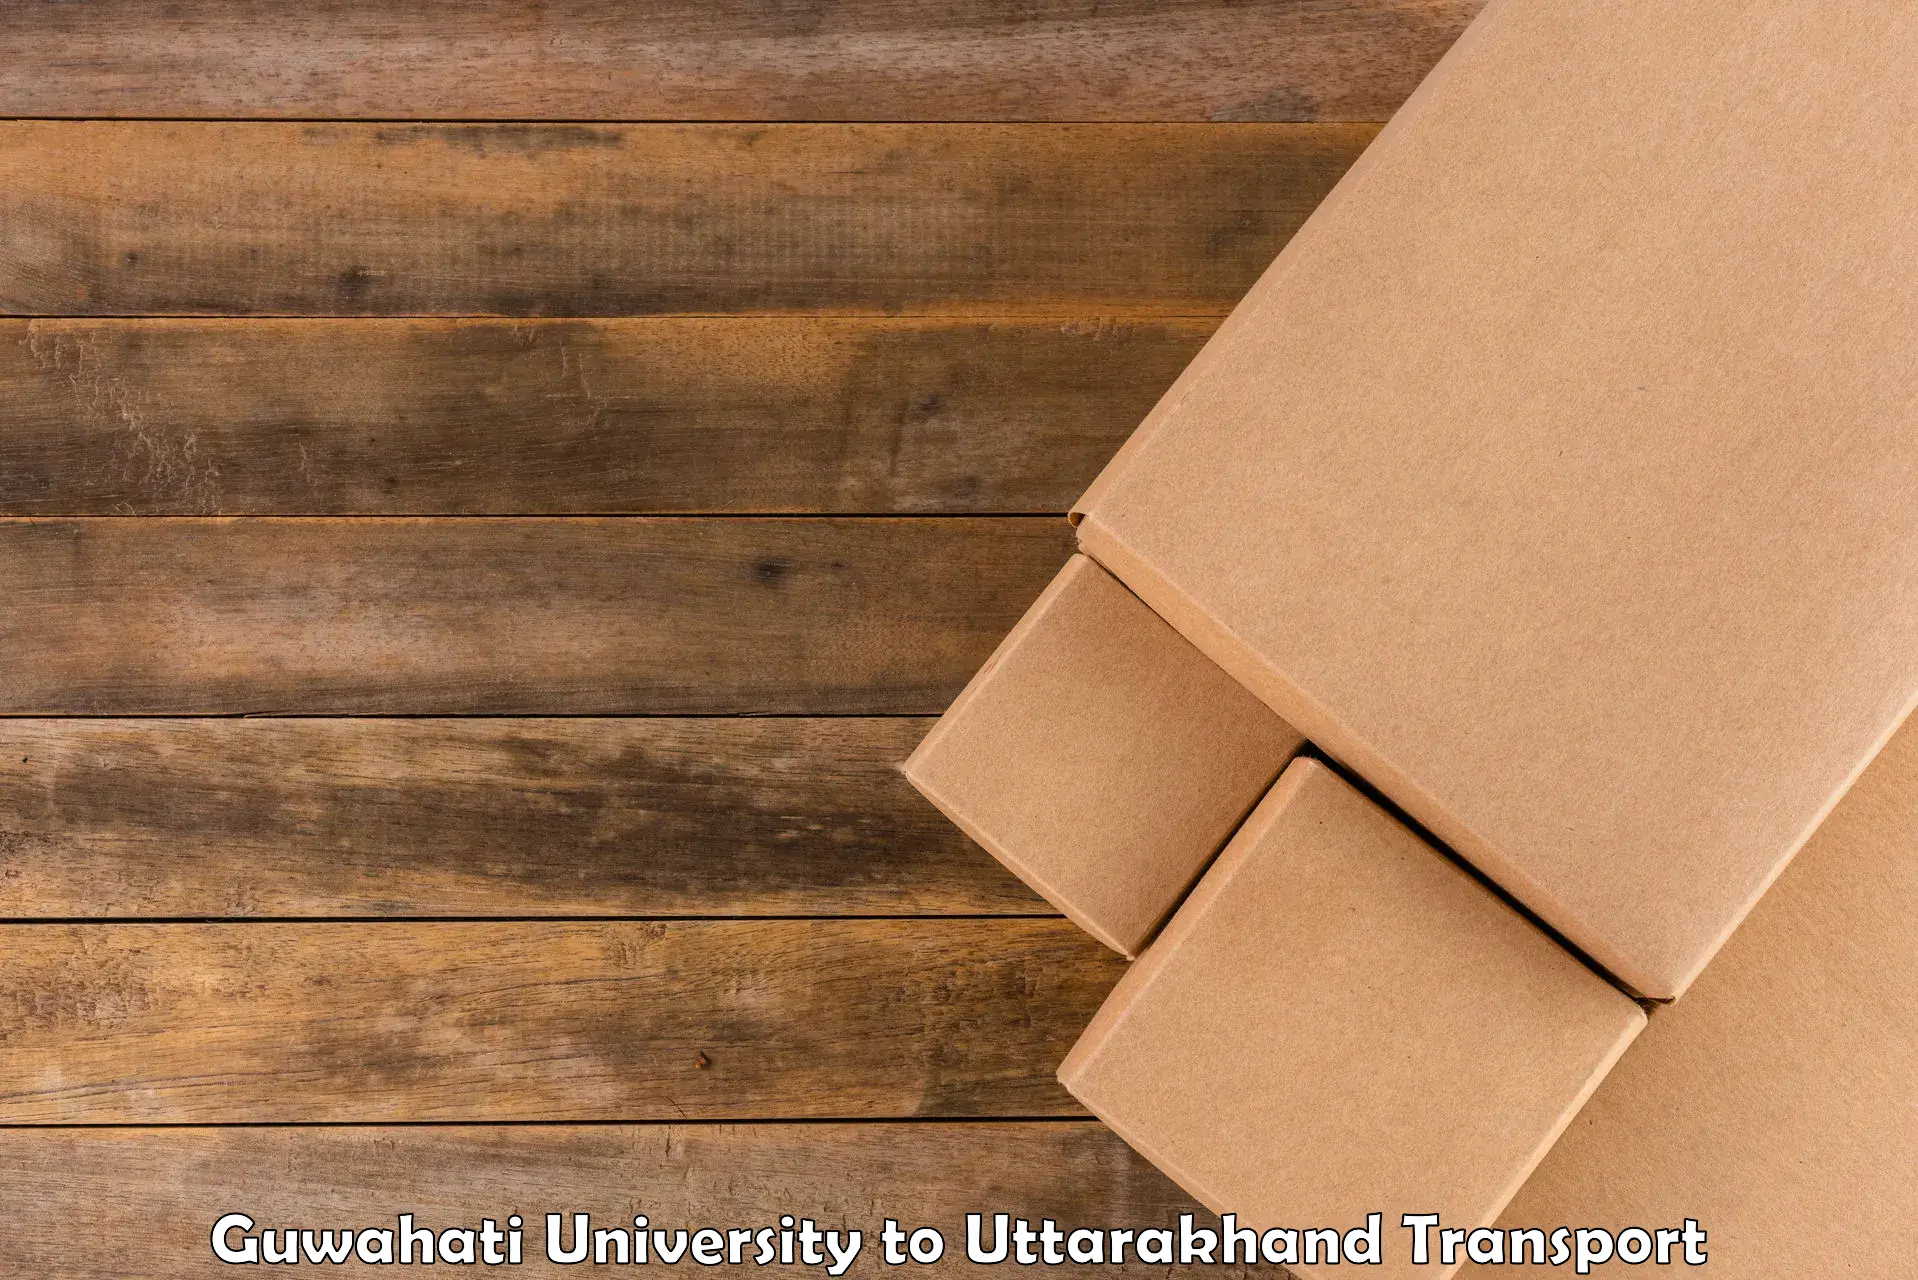 Cargo transportation services Guwahati University to Uttarakhand